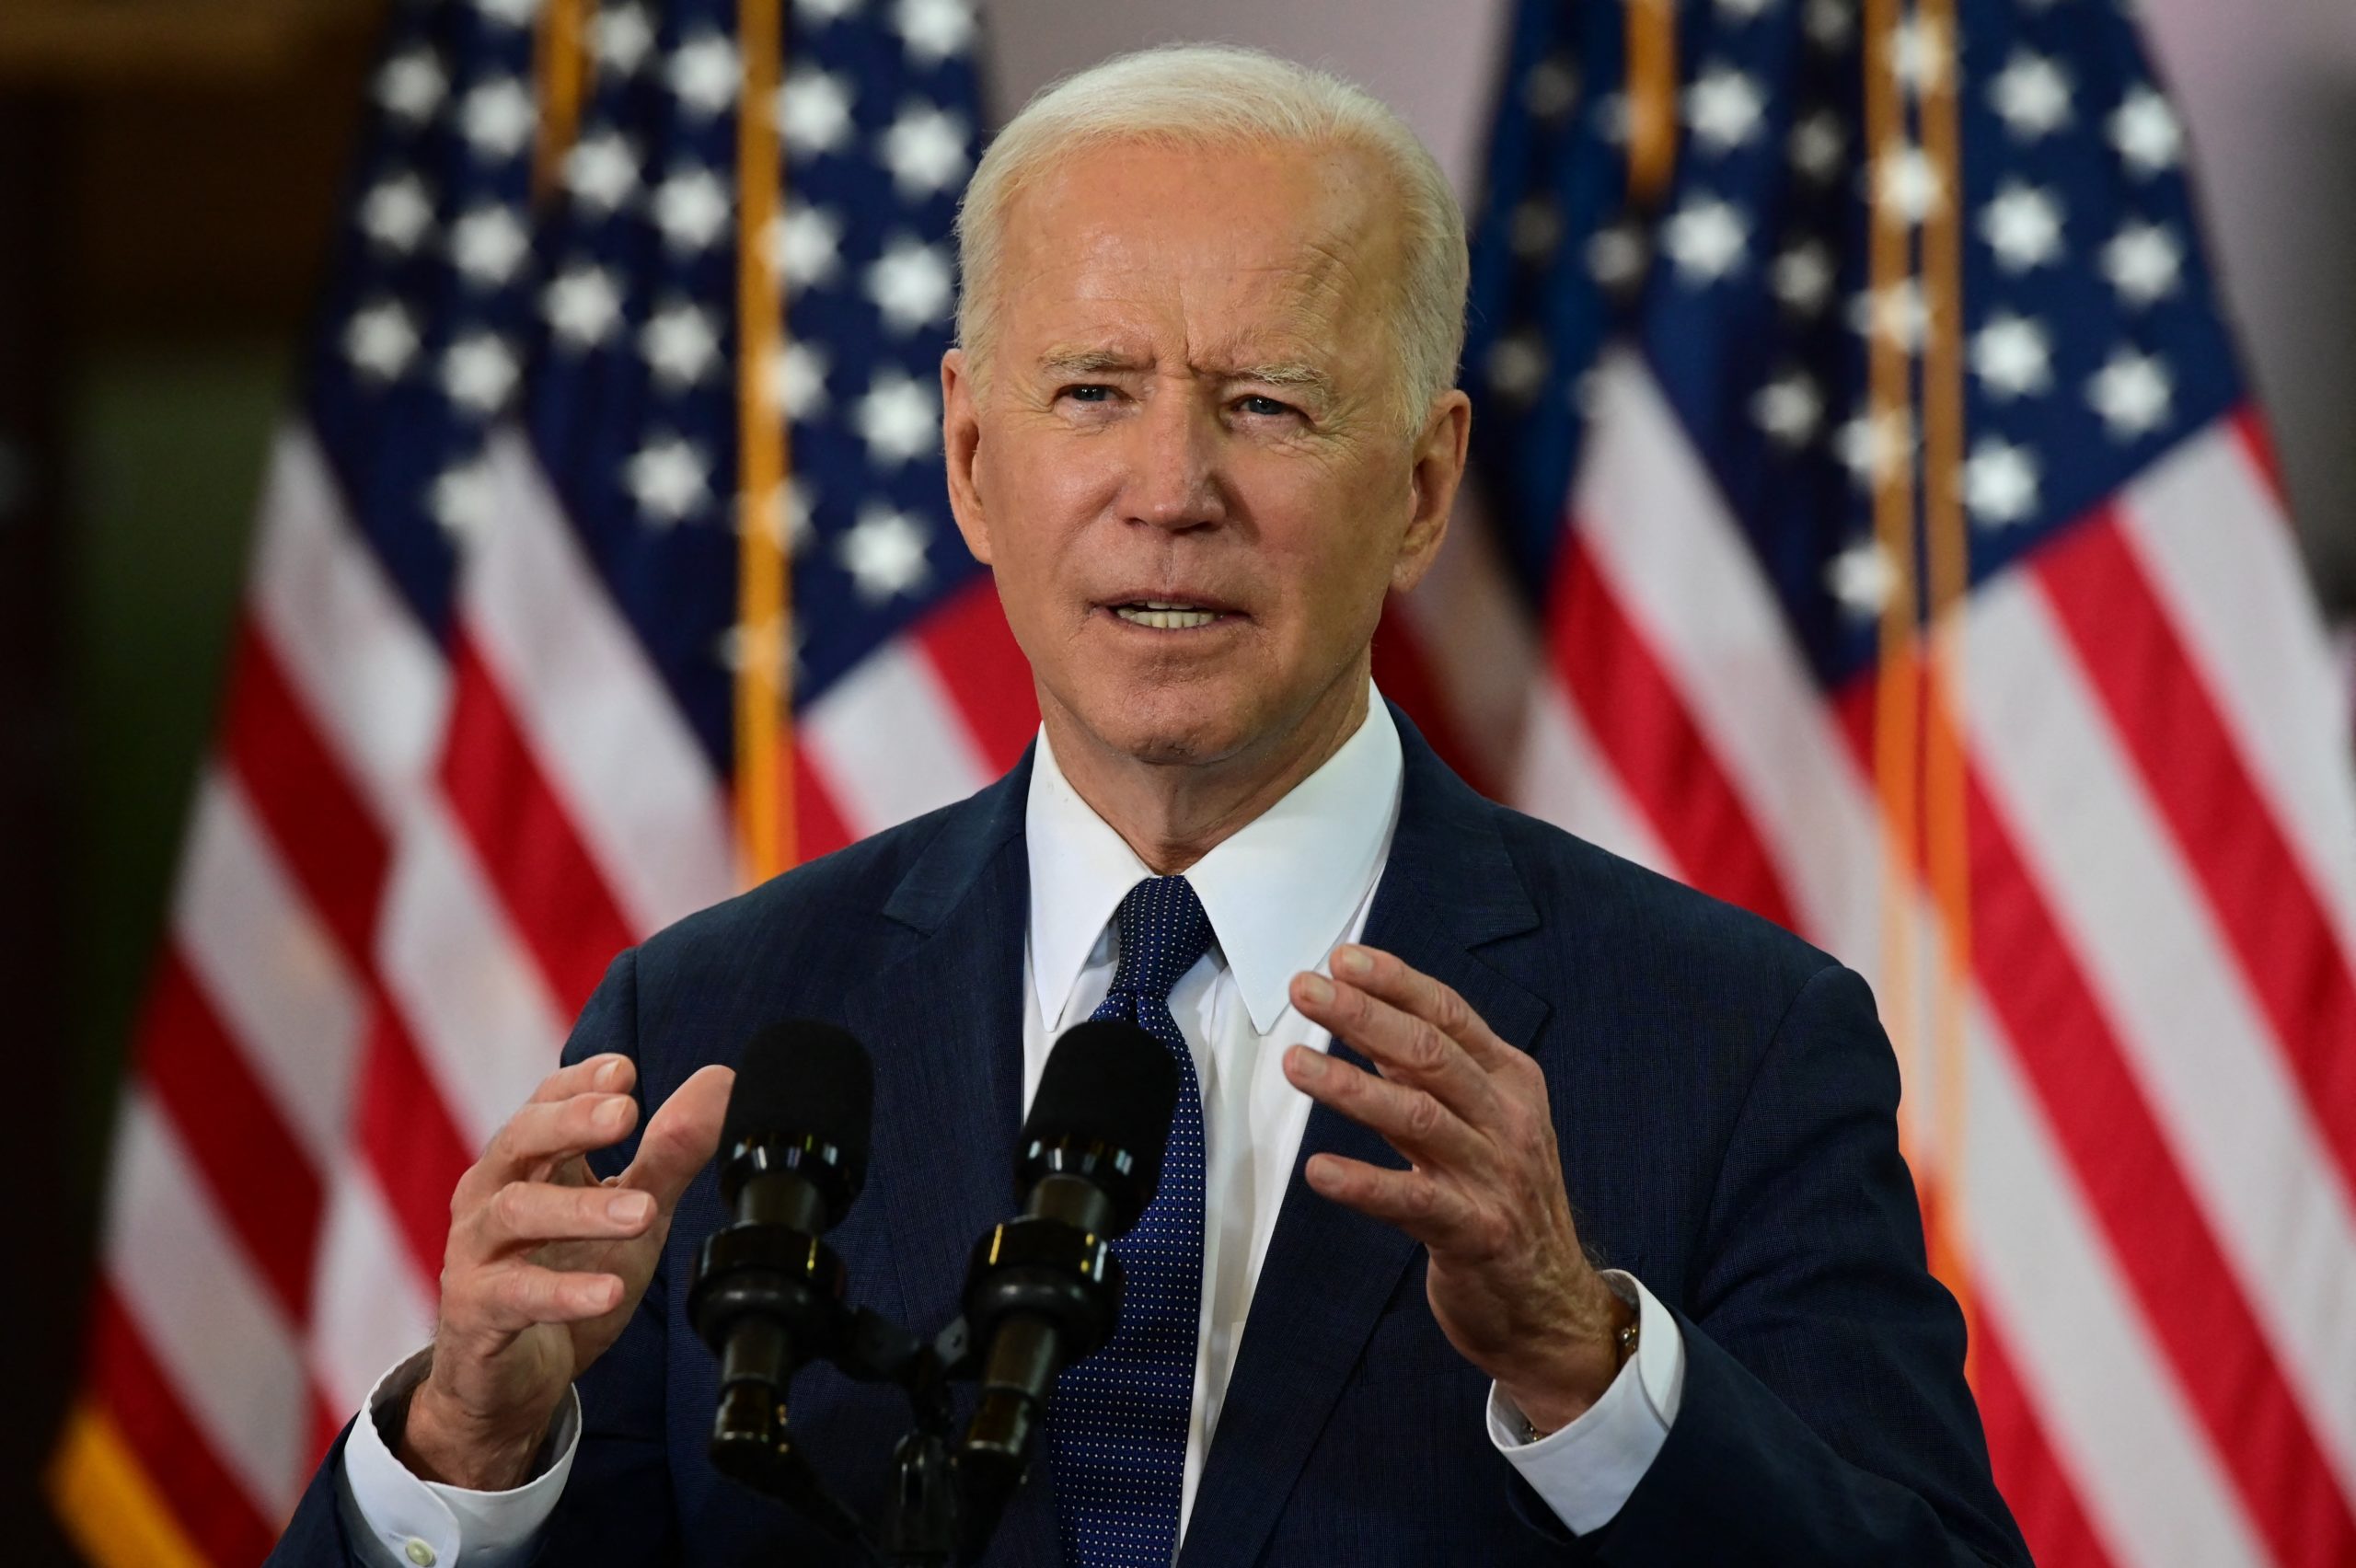 Joe Biden veut investir 2 000 milliards de dollars dans les infrastructures américaines